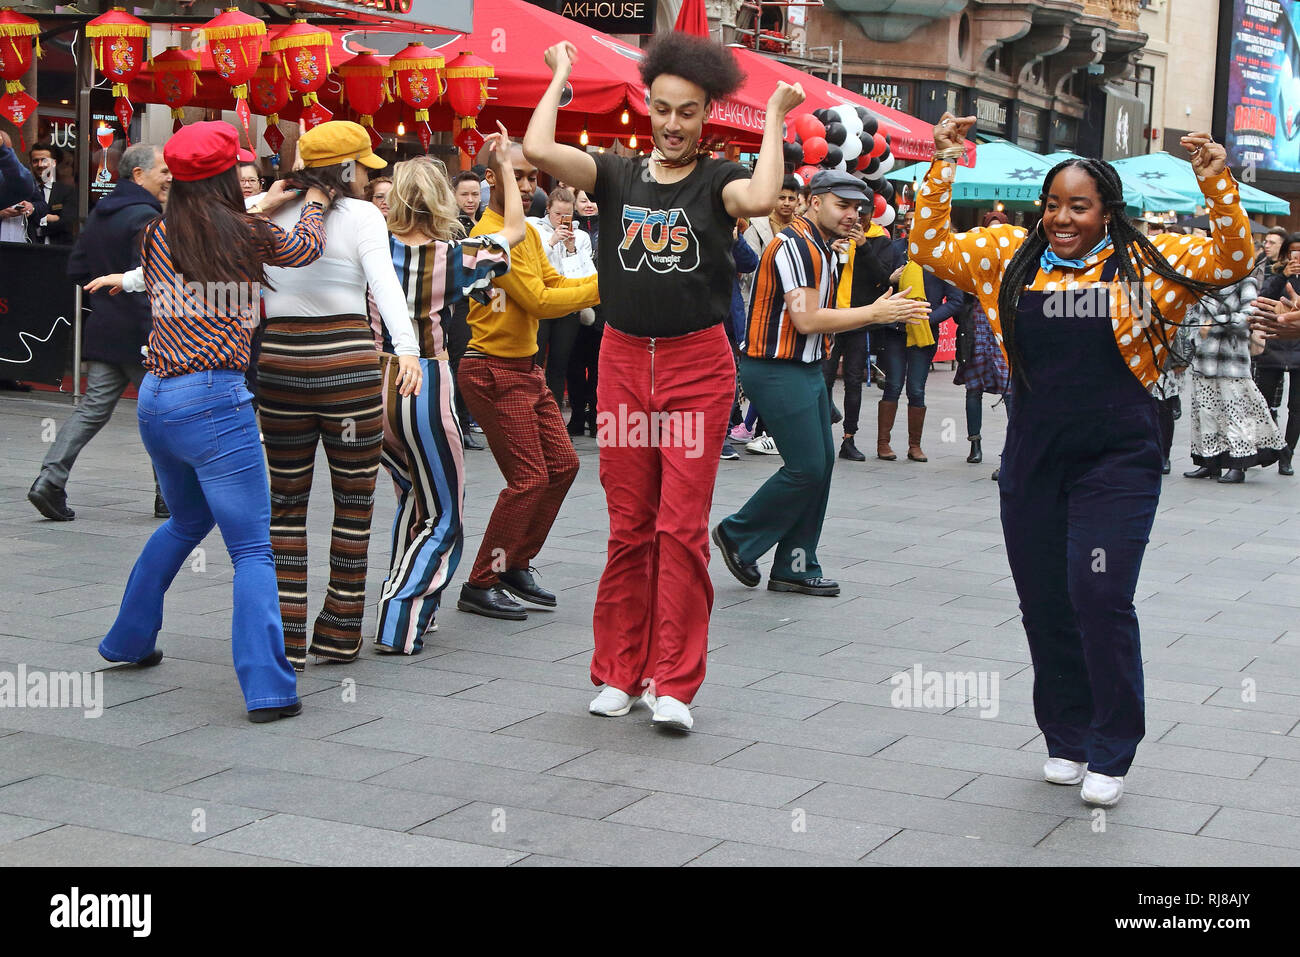 Il Soul Americana equipaggio vede ballare insieme per le strade di Londra. In onore della scommessa (Black Entertainment Television) della rete groovy di nuovo periodo di dramma, Soul Americana, un flash mob dance prendere in consegna per le strade di Londra. Foto Stock